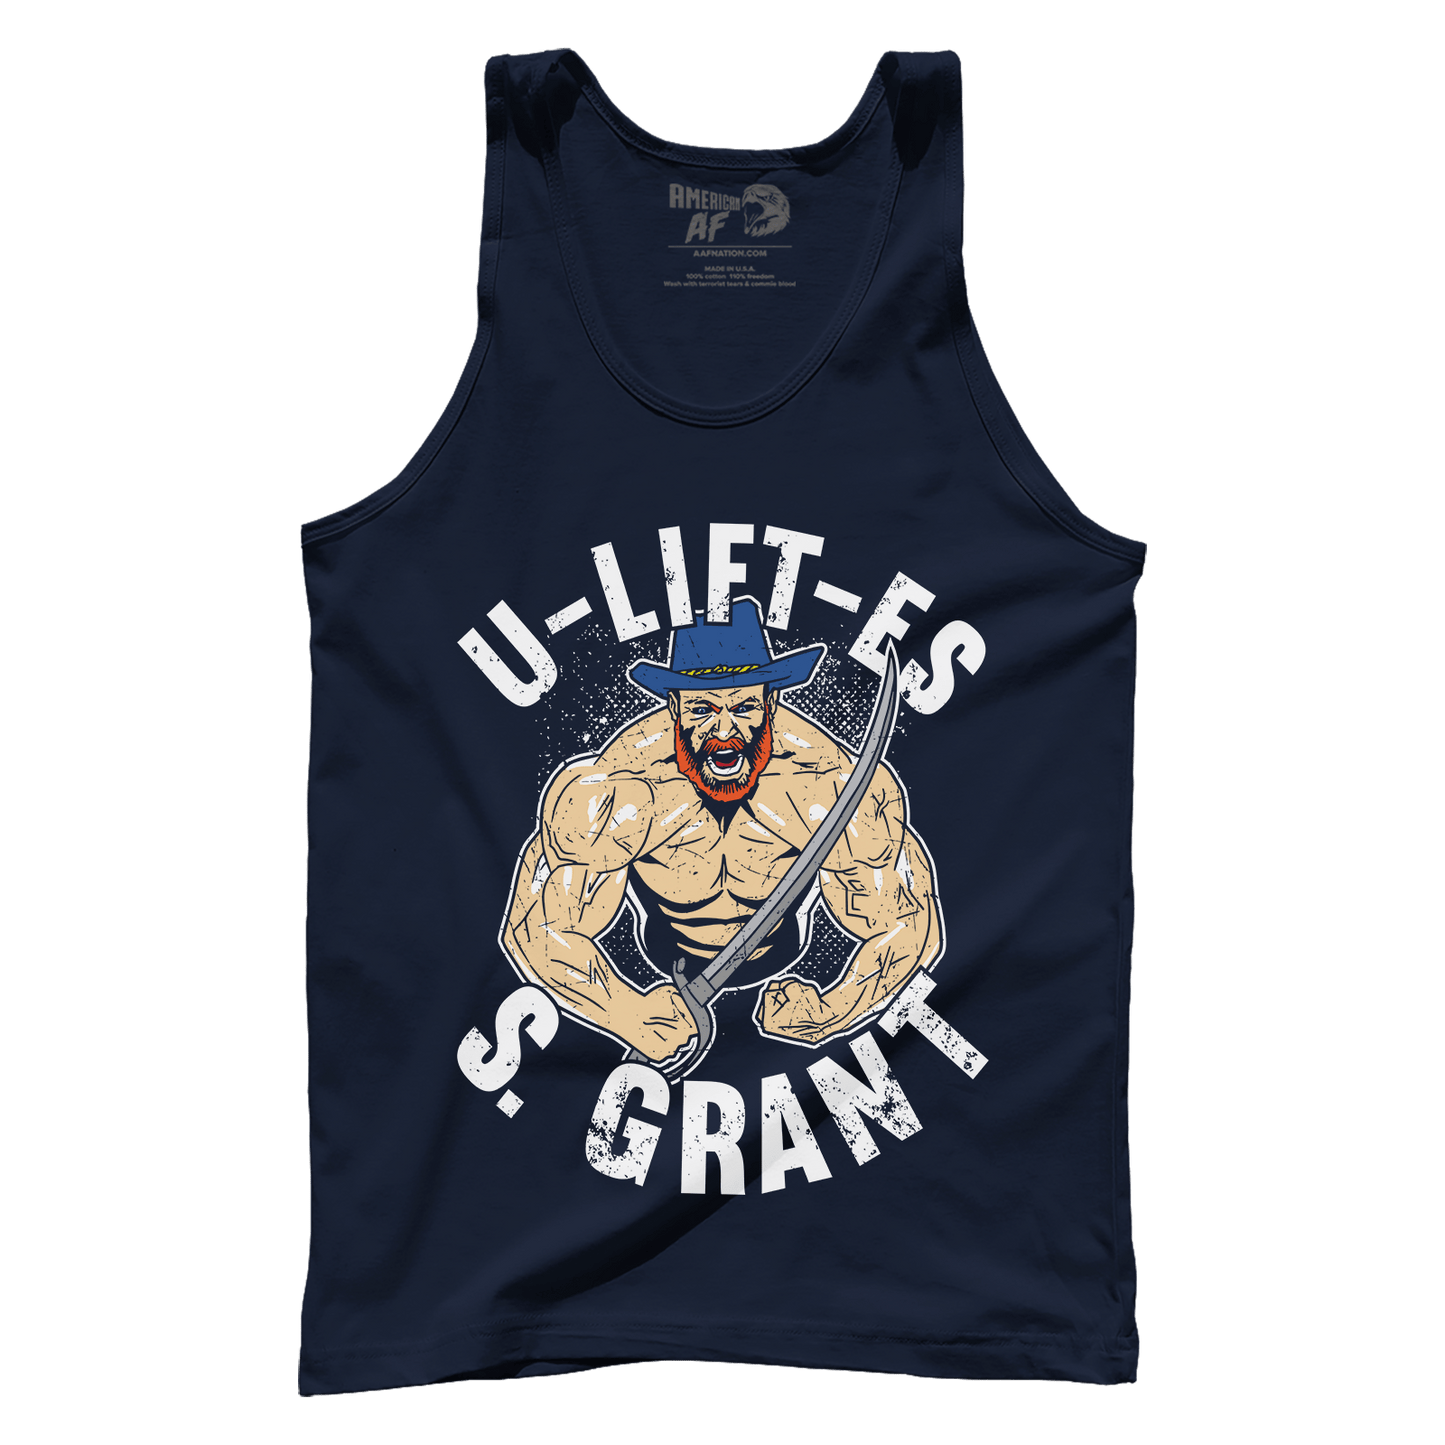 T-shirt Uliftes S. Grant